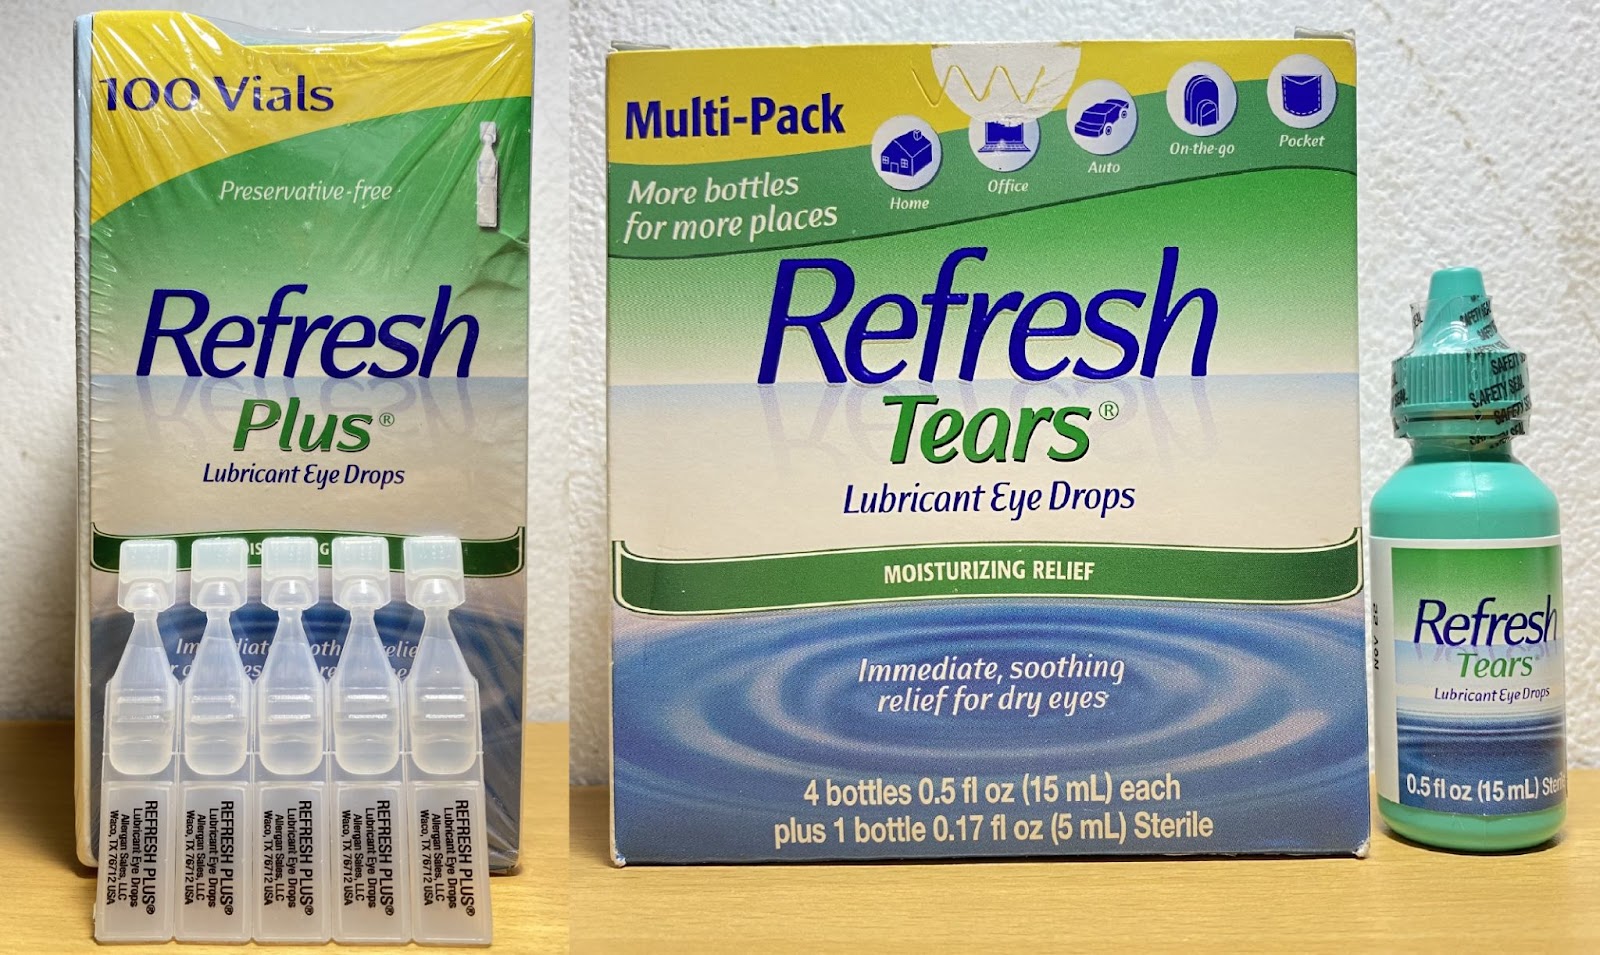 Nước mắt nhân tạo Refresh có thành phần chính là carboxymethylcellulose, một chất nhầy giúp giữ nước và ngăn ngừa các hạt bụi bám vào mắt.